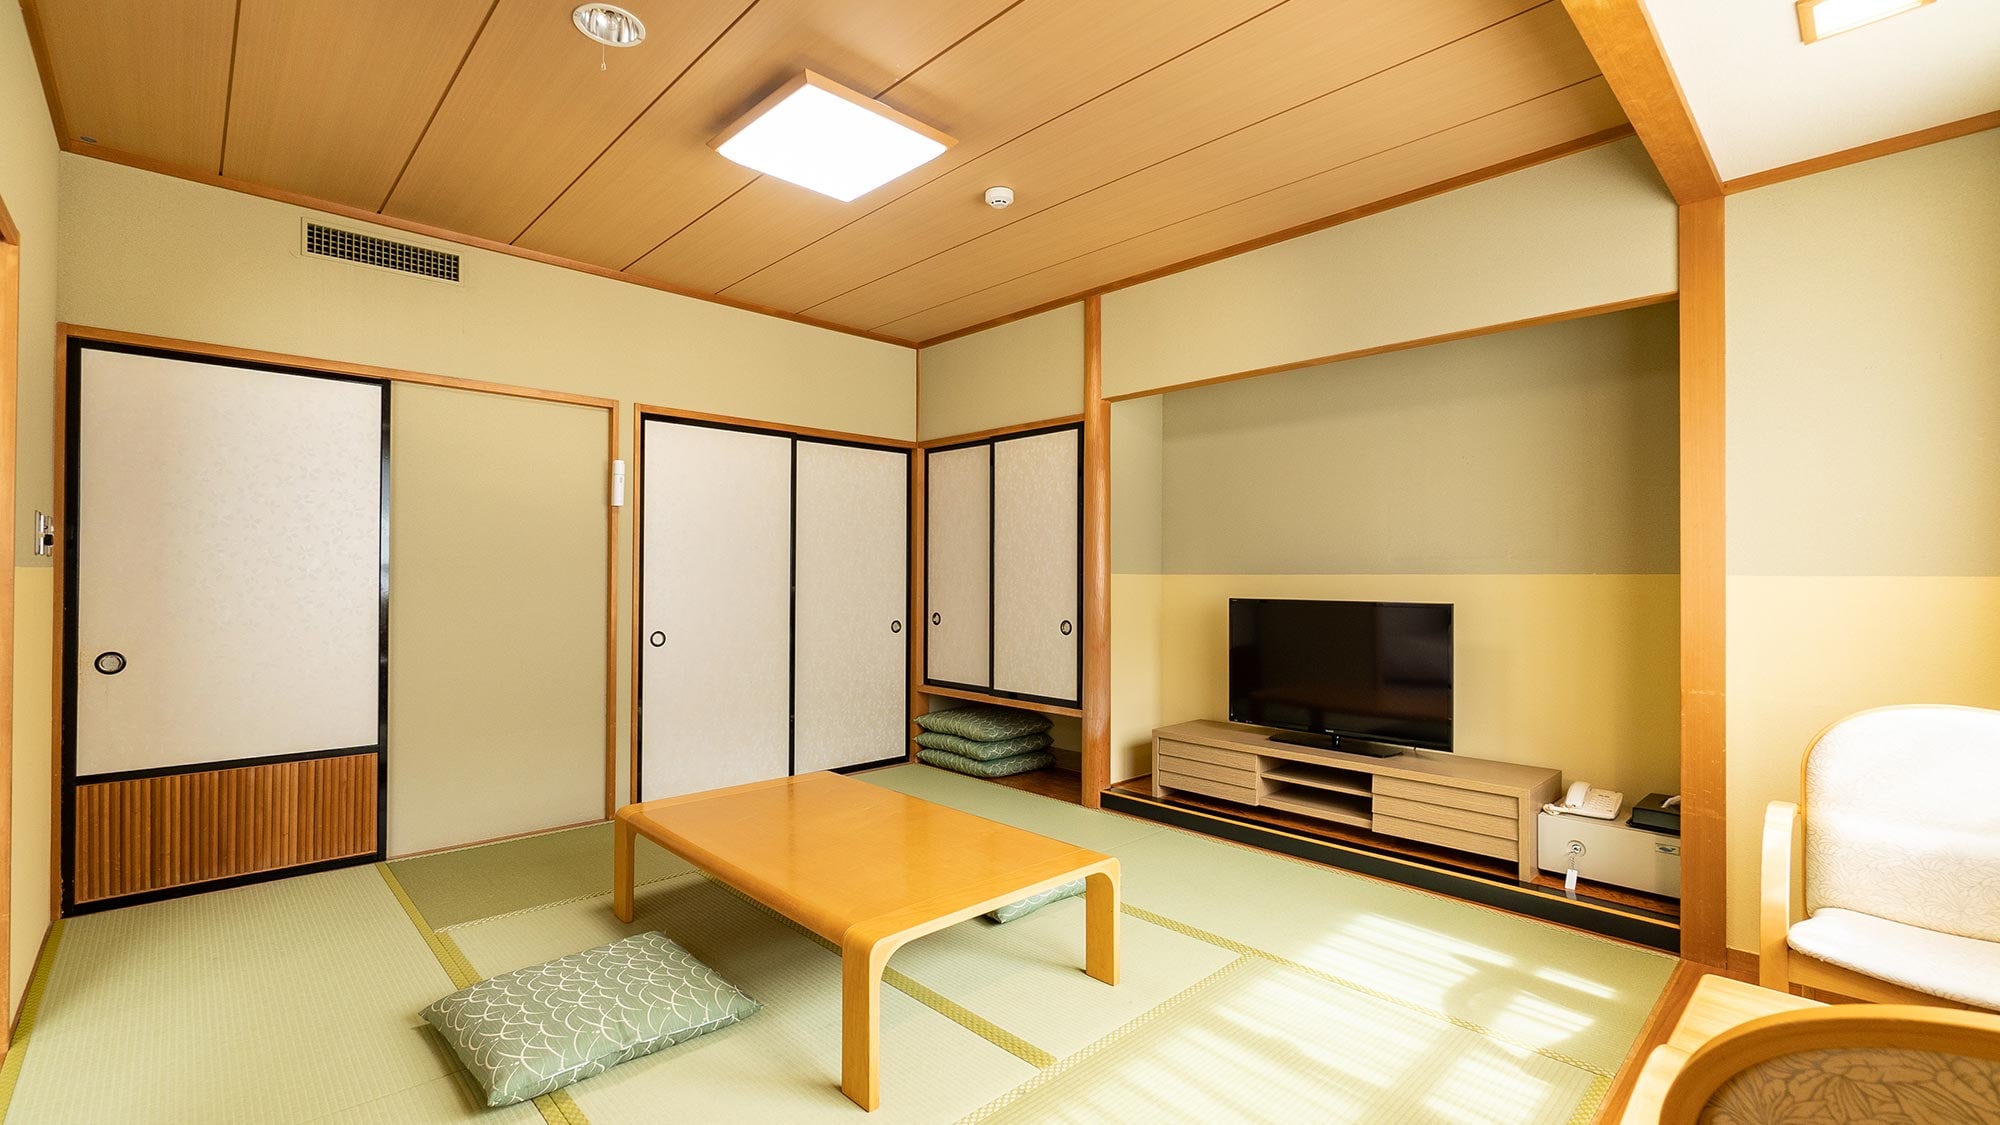 ภาคผนวก - ห้องเตียงแฝดสไตล์ญี่ปุ่นและตะวันตก + เสื่อทาทามิ 8 ผืน / ปลอดบุหรี่ / ความจุ ~ 5 คน